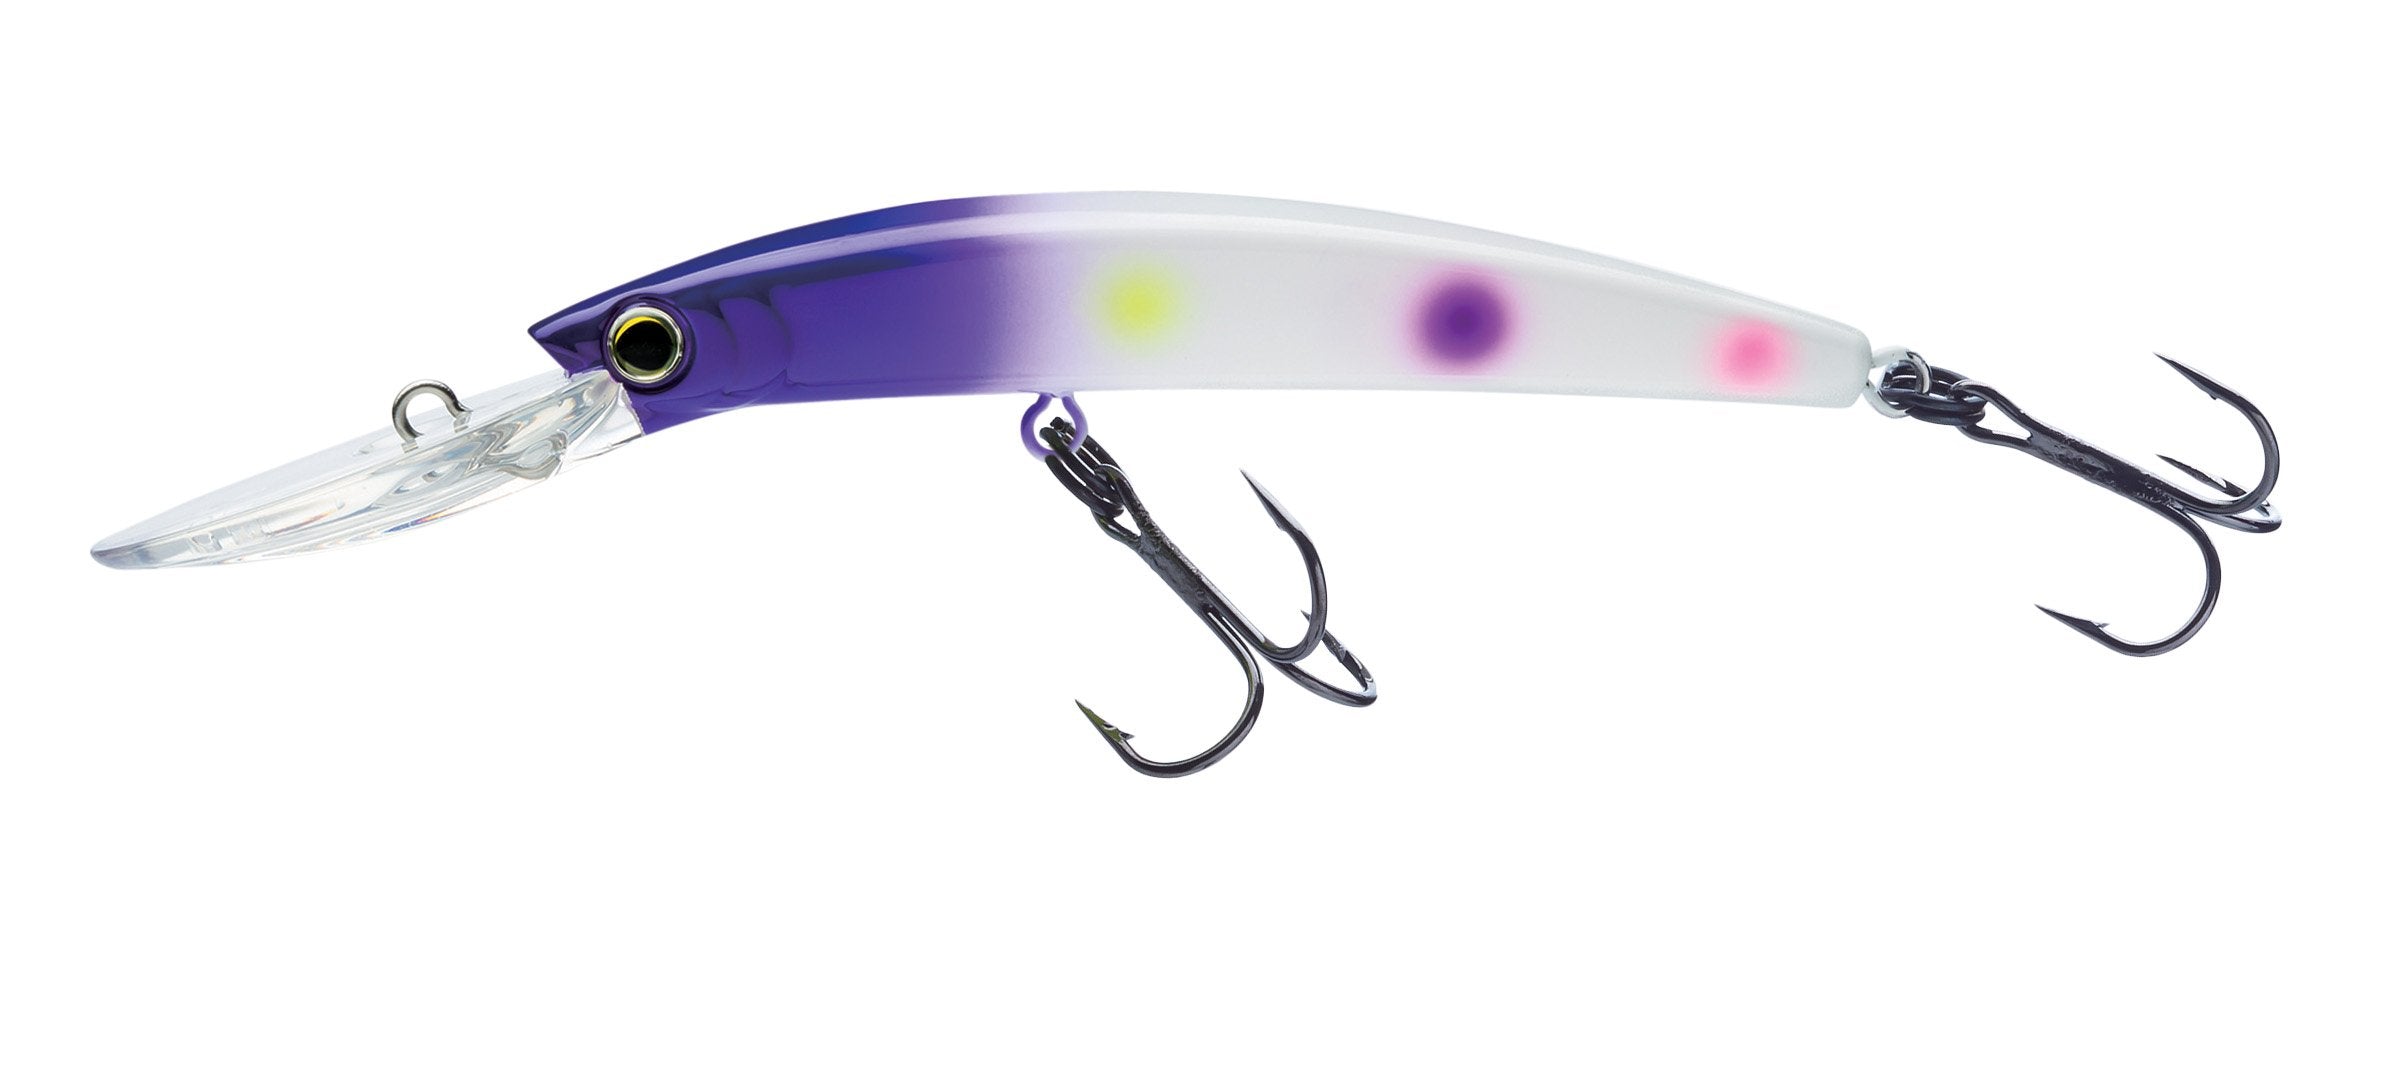 Yo-Zuri Pins Minnow (F) Floating Diver Lure, Purple Rainbow Trout